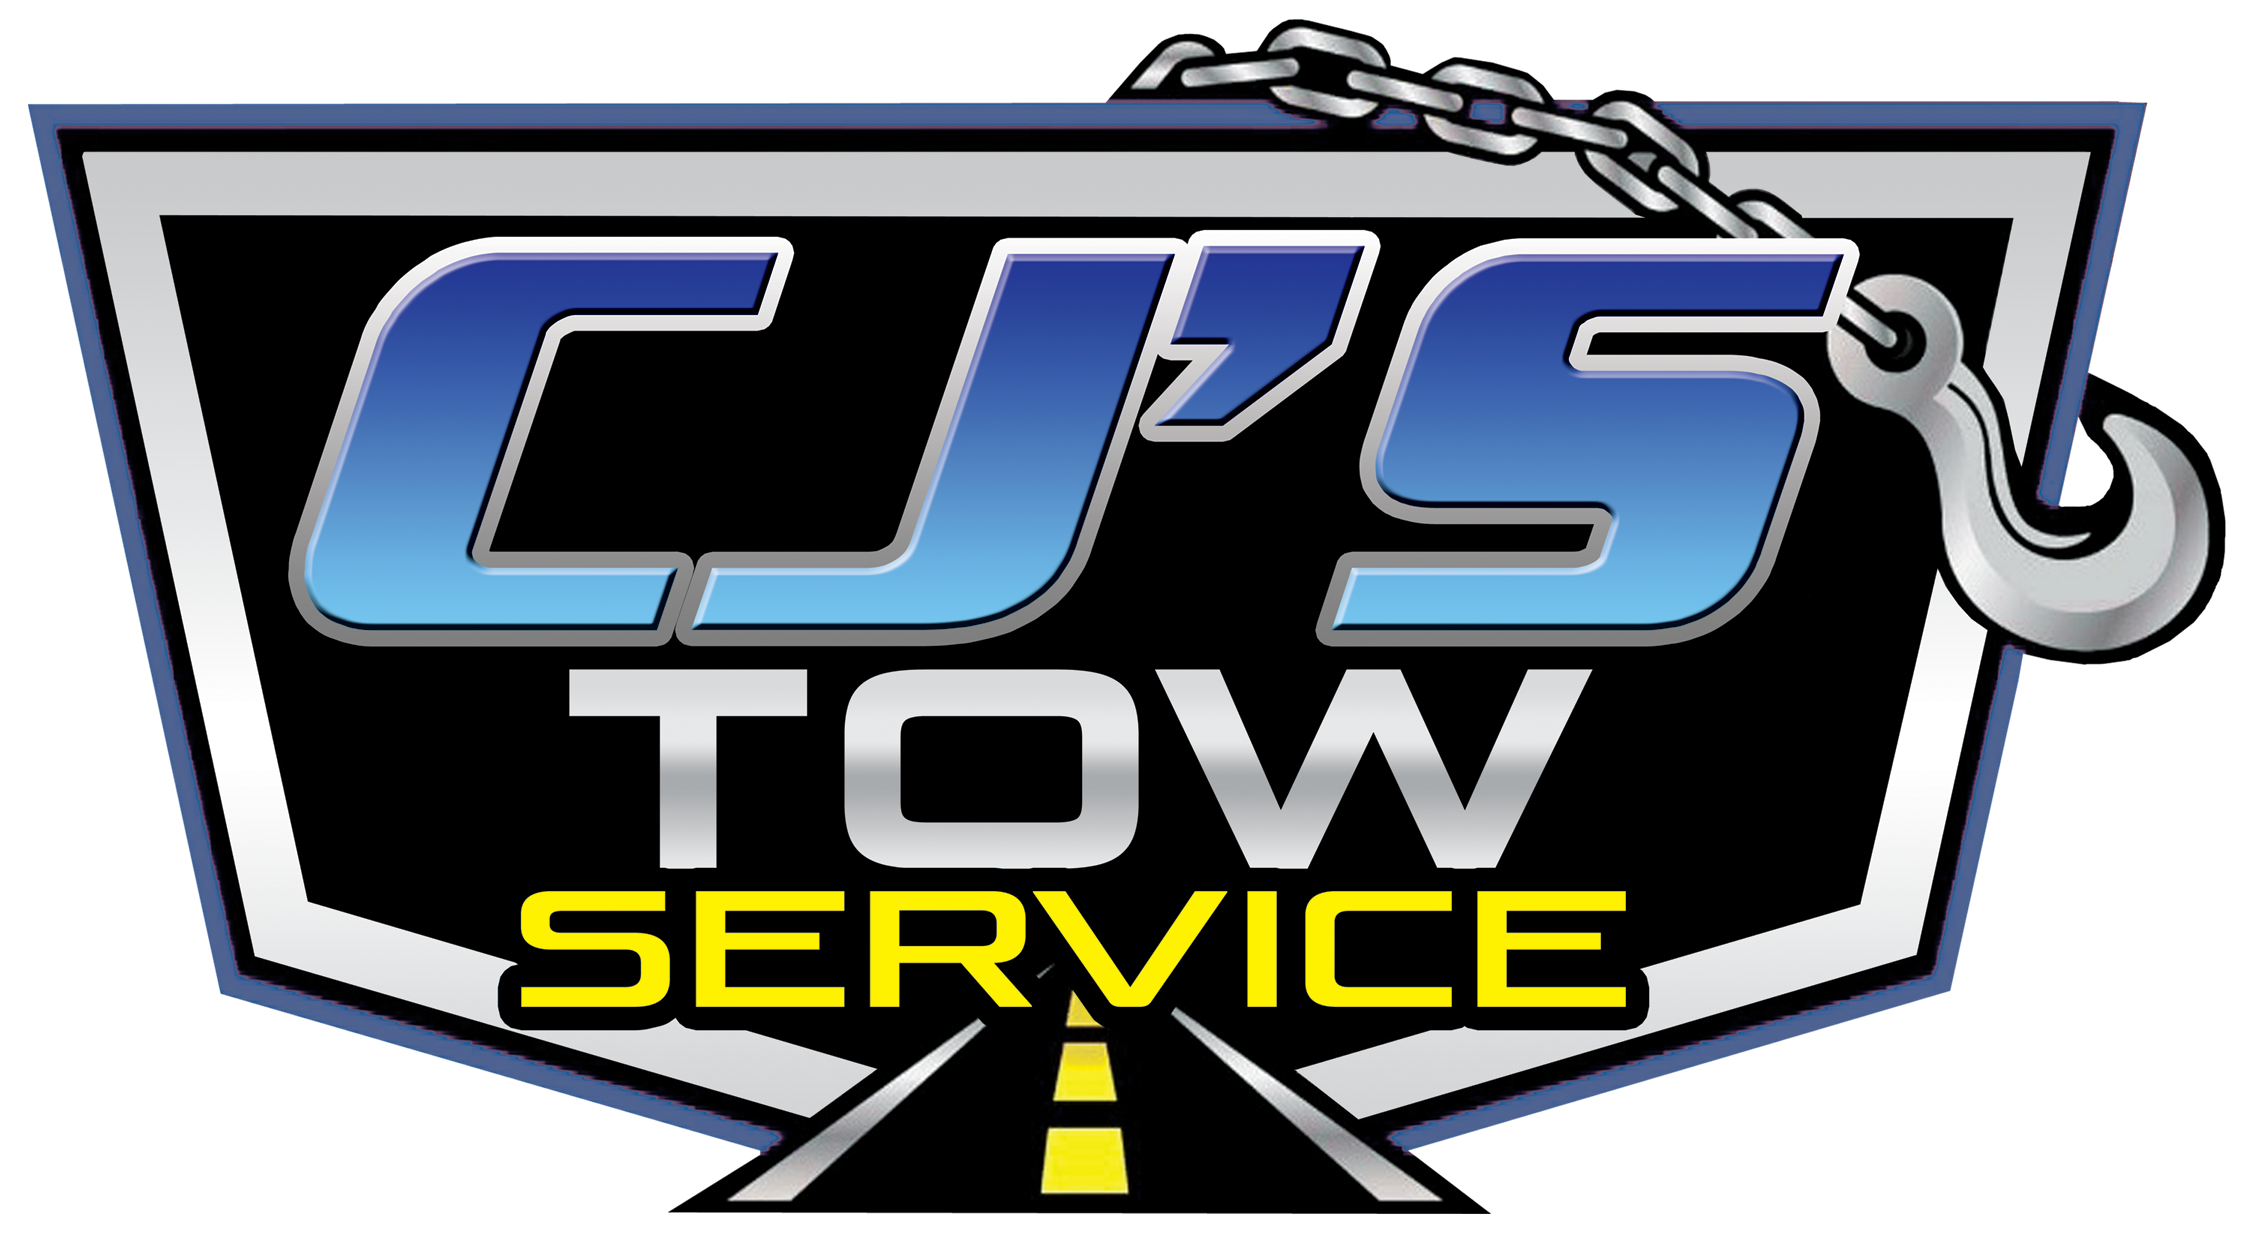 CJS TOW SERVICE logo